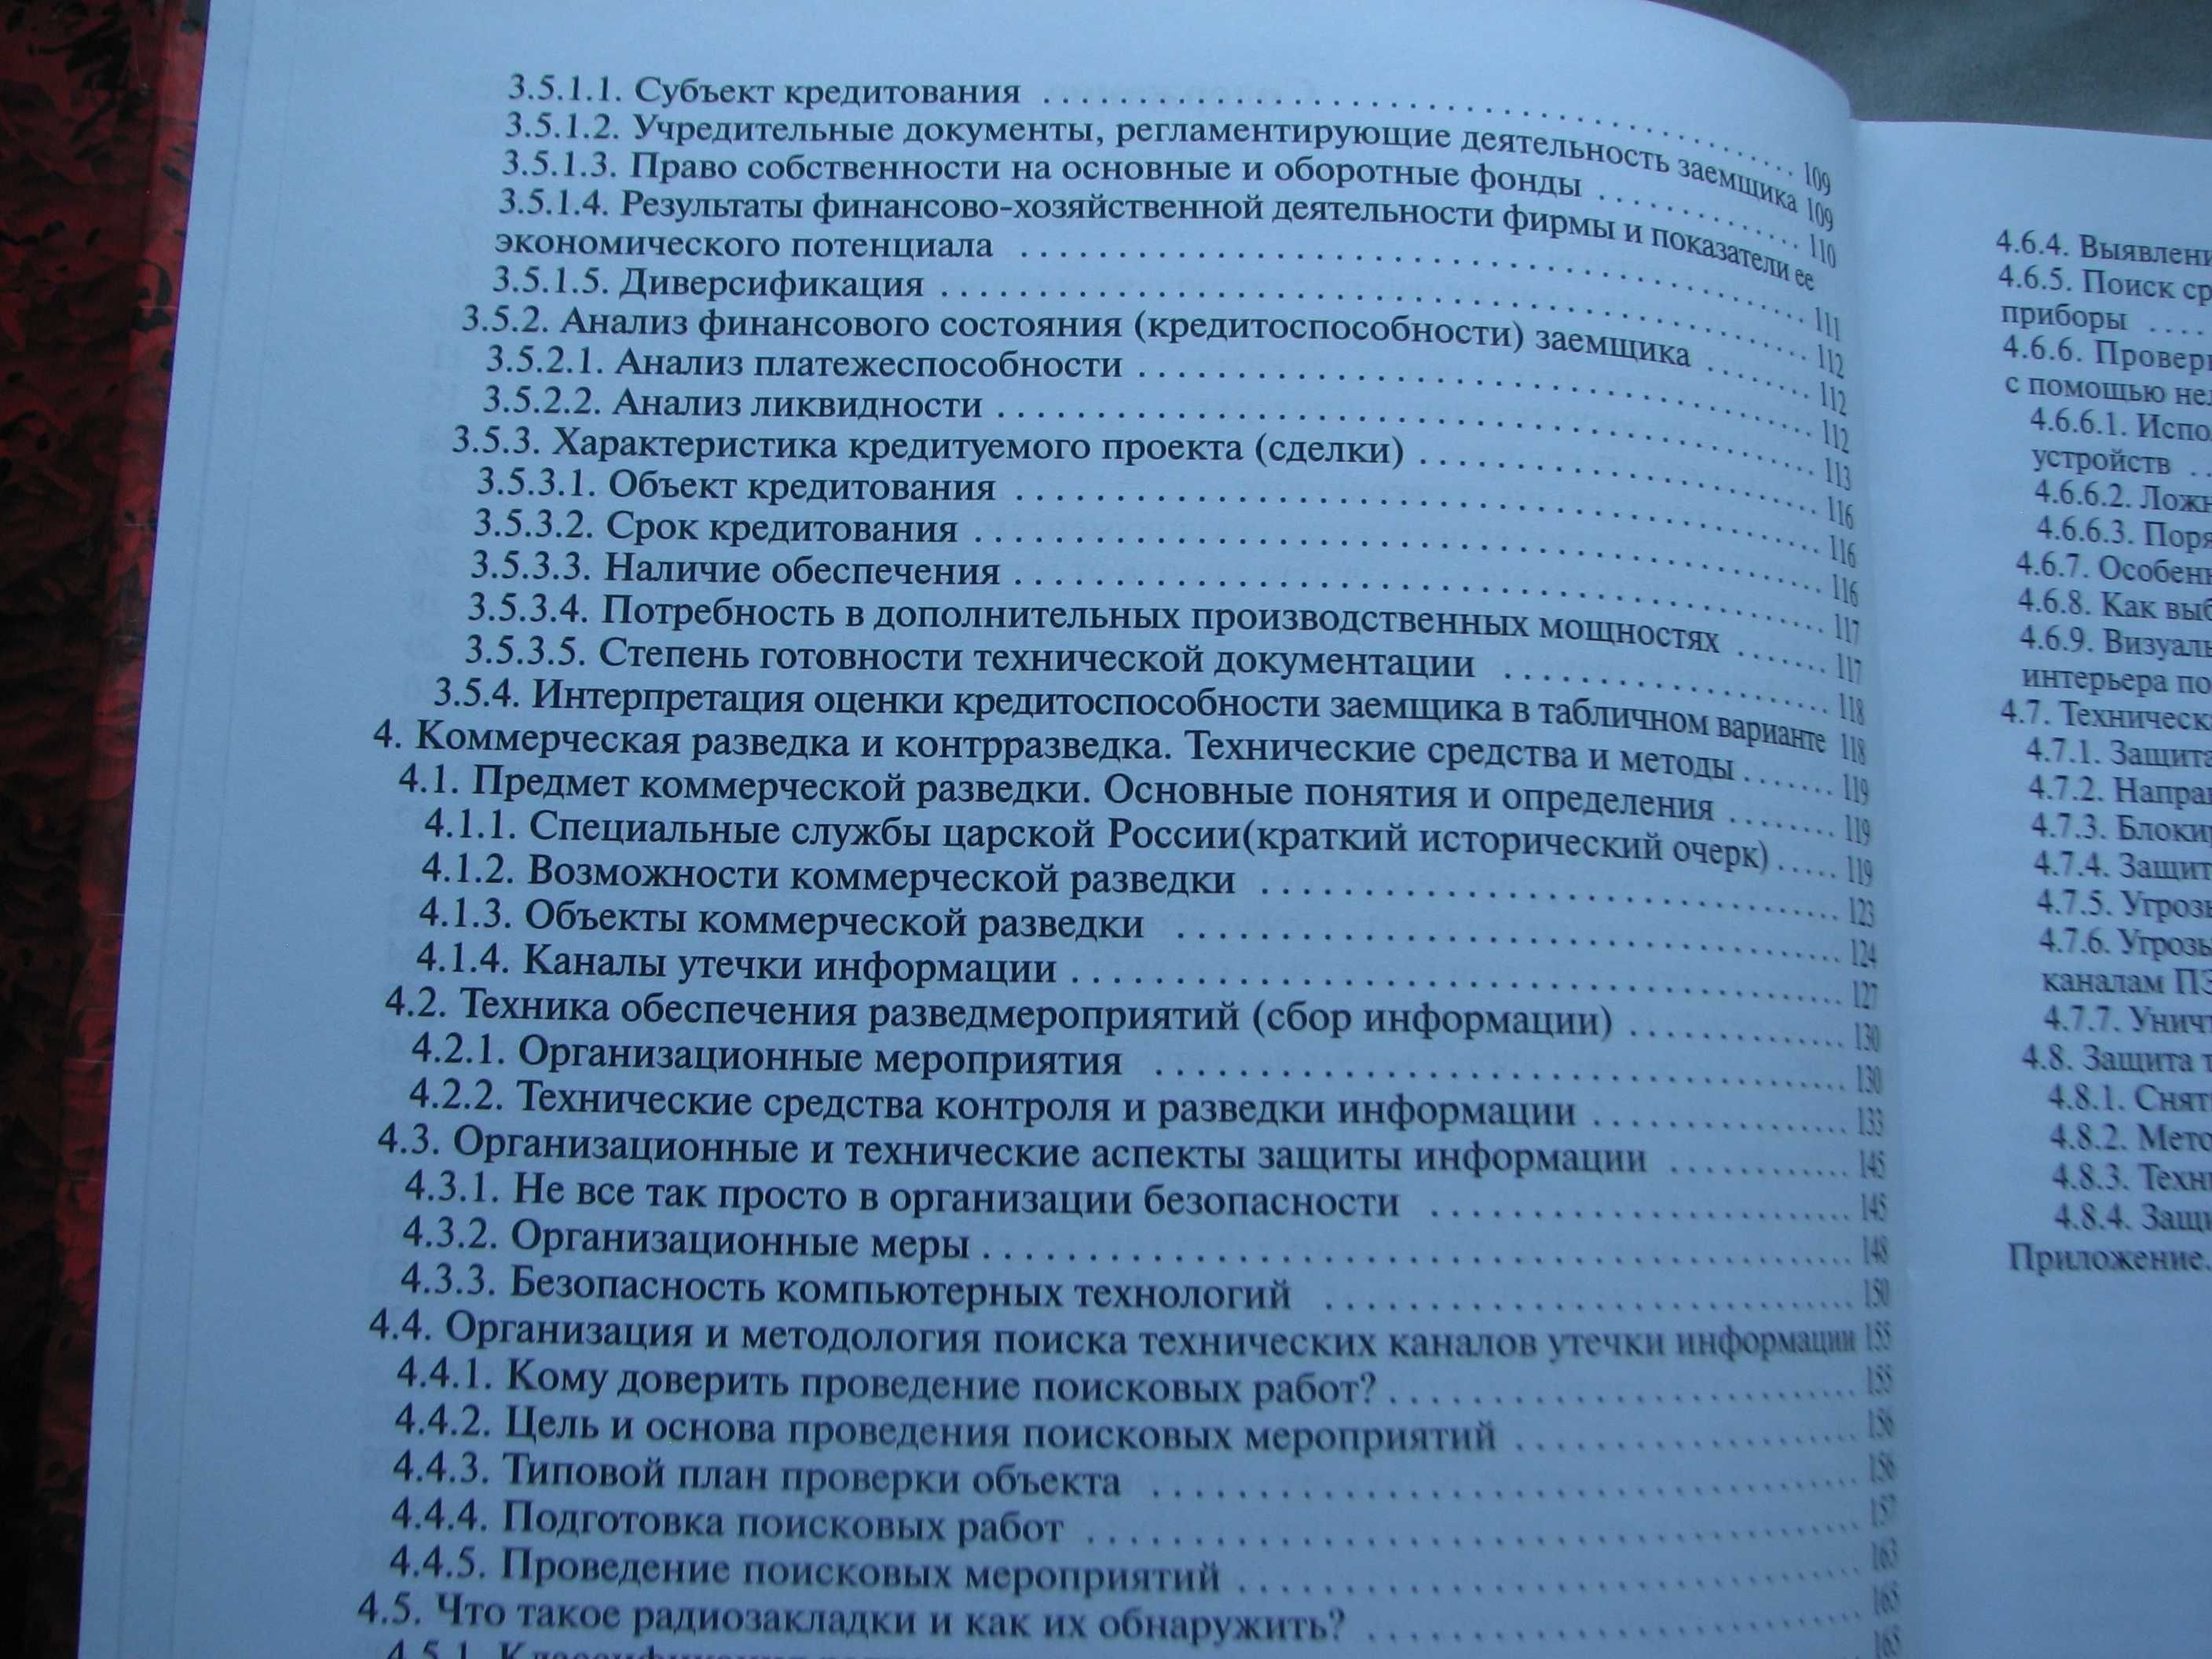 Книга  Бурышев В.С.  "Концепции безопасности", том 1, 2